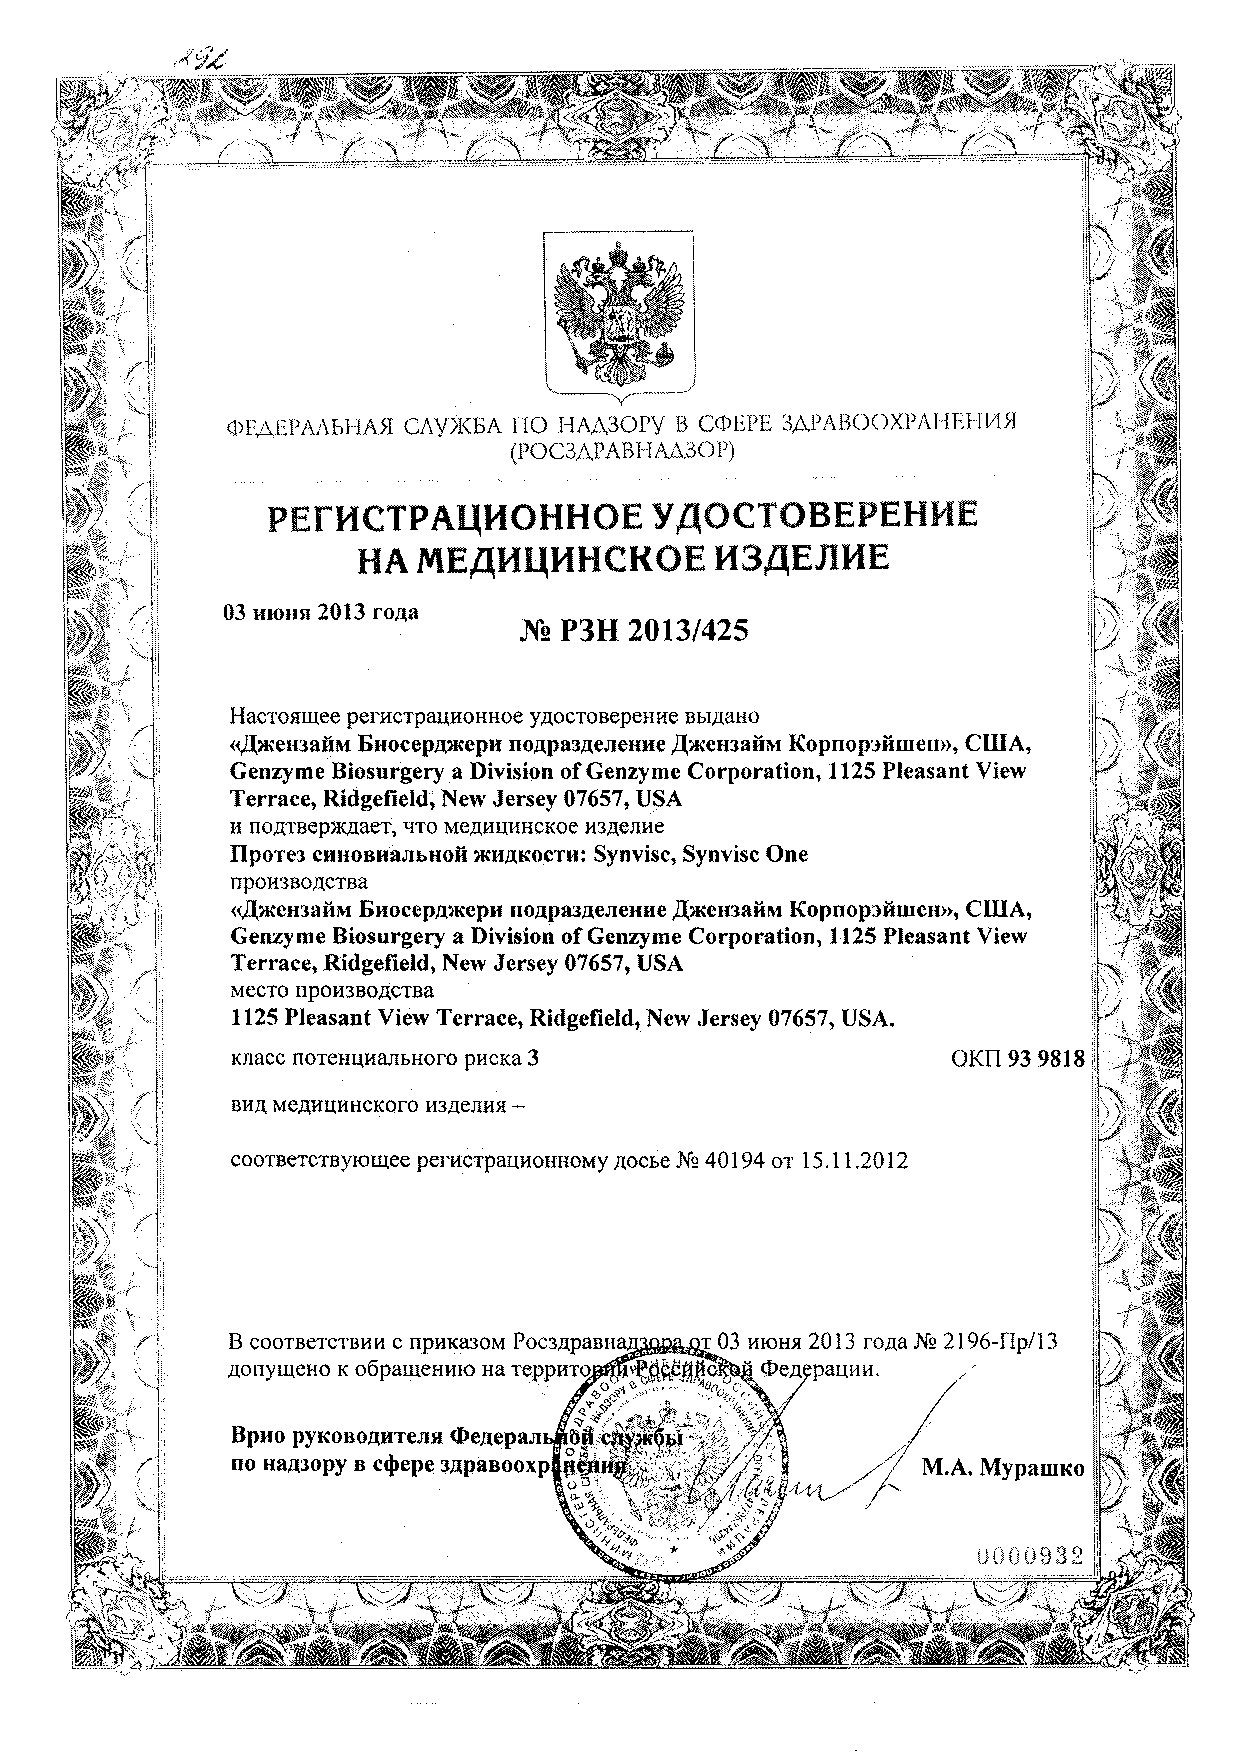 Сертификат на Синвиск